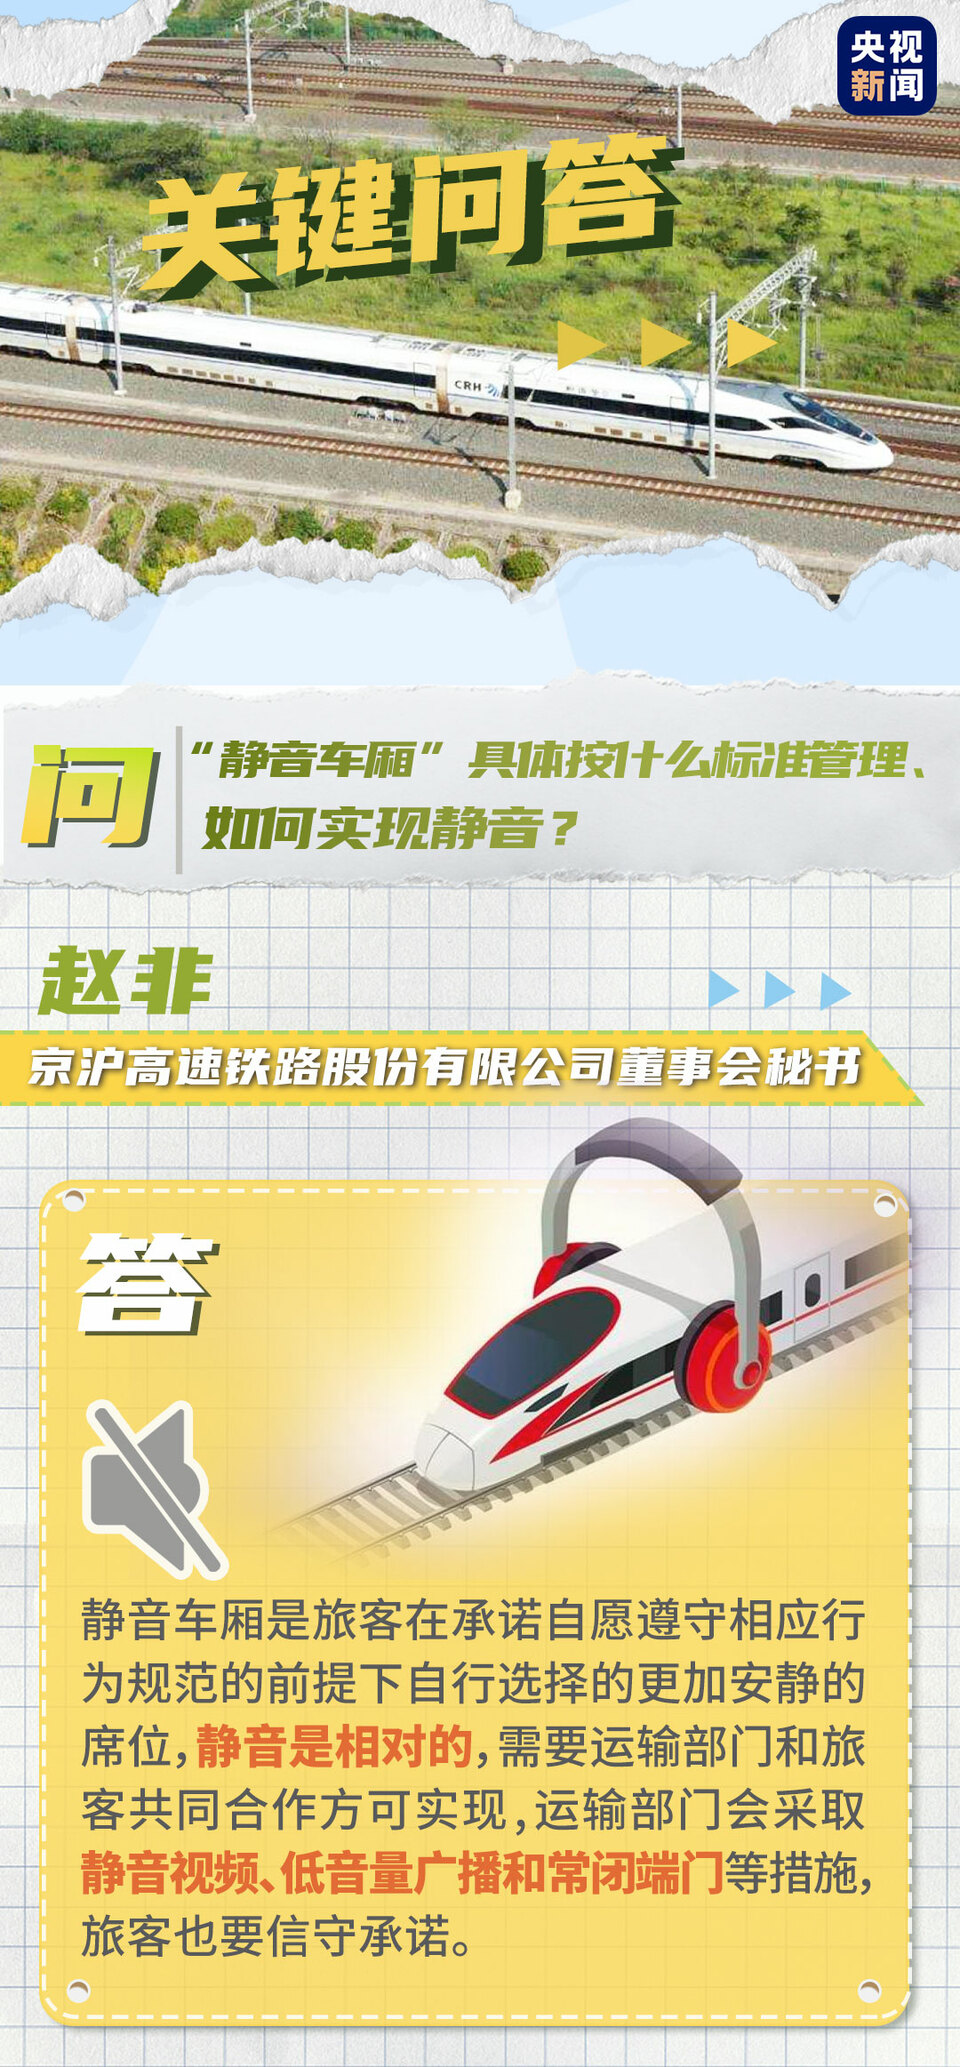 京沪高铁“静音车厢”怎么能做到？最新回应来了！还有票价信息……